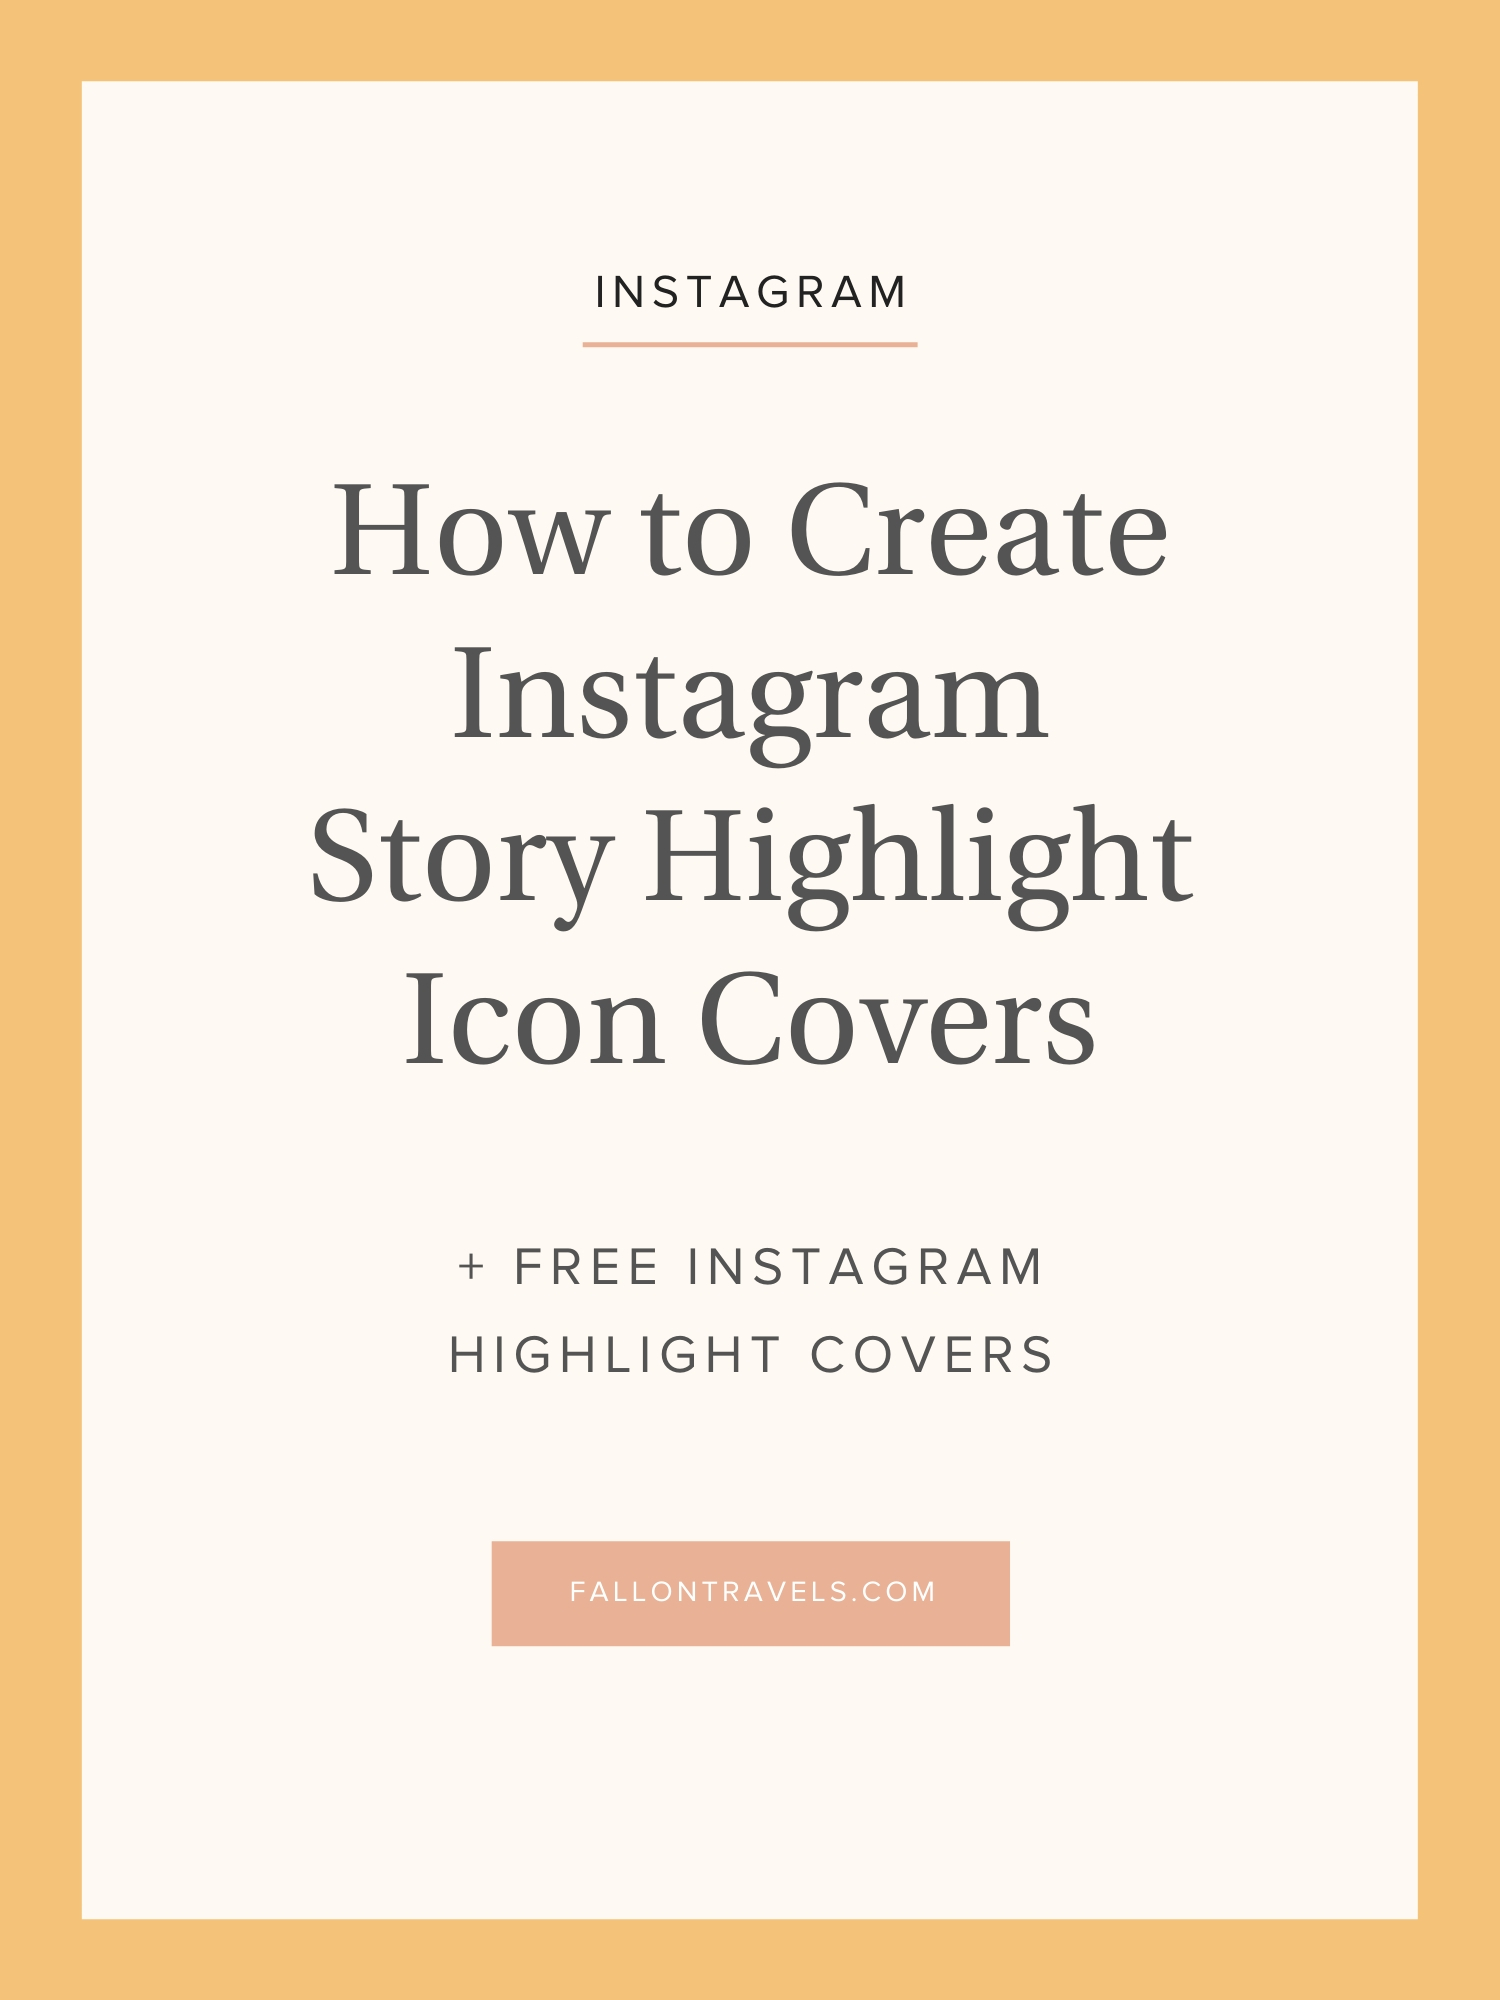 Highlight cover  Instagram icons, Instagram logo, Instagram